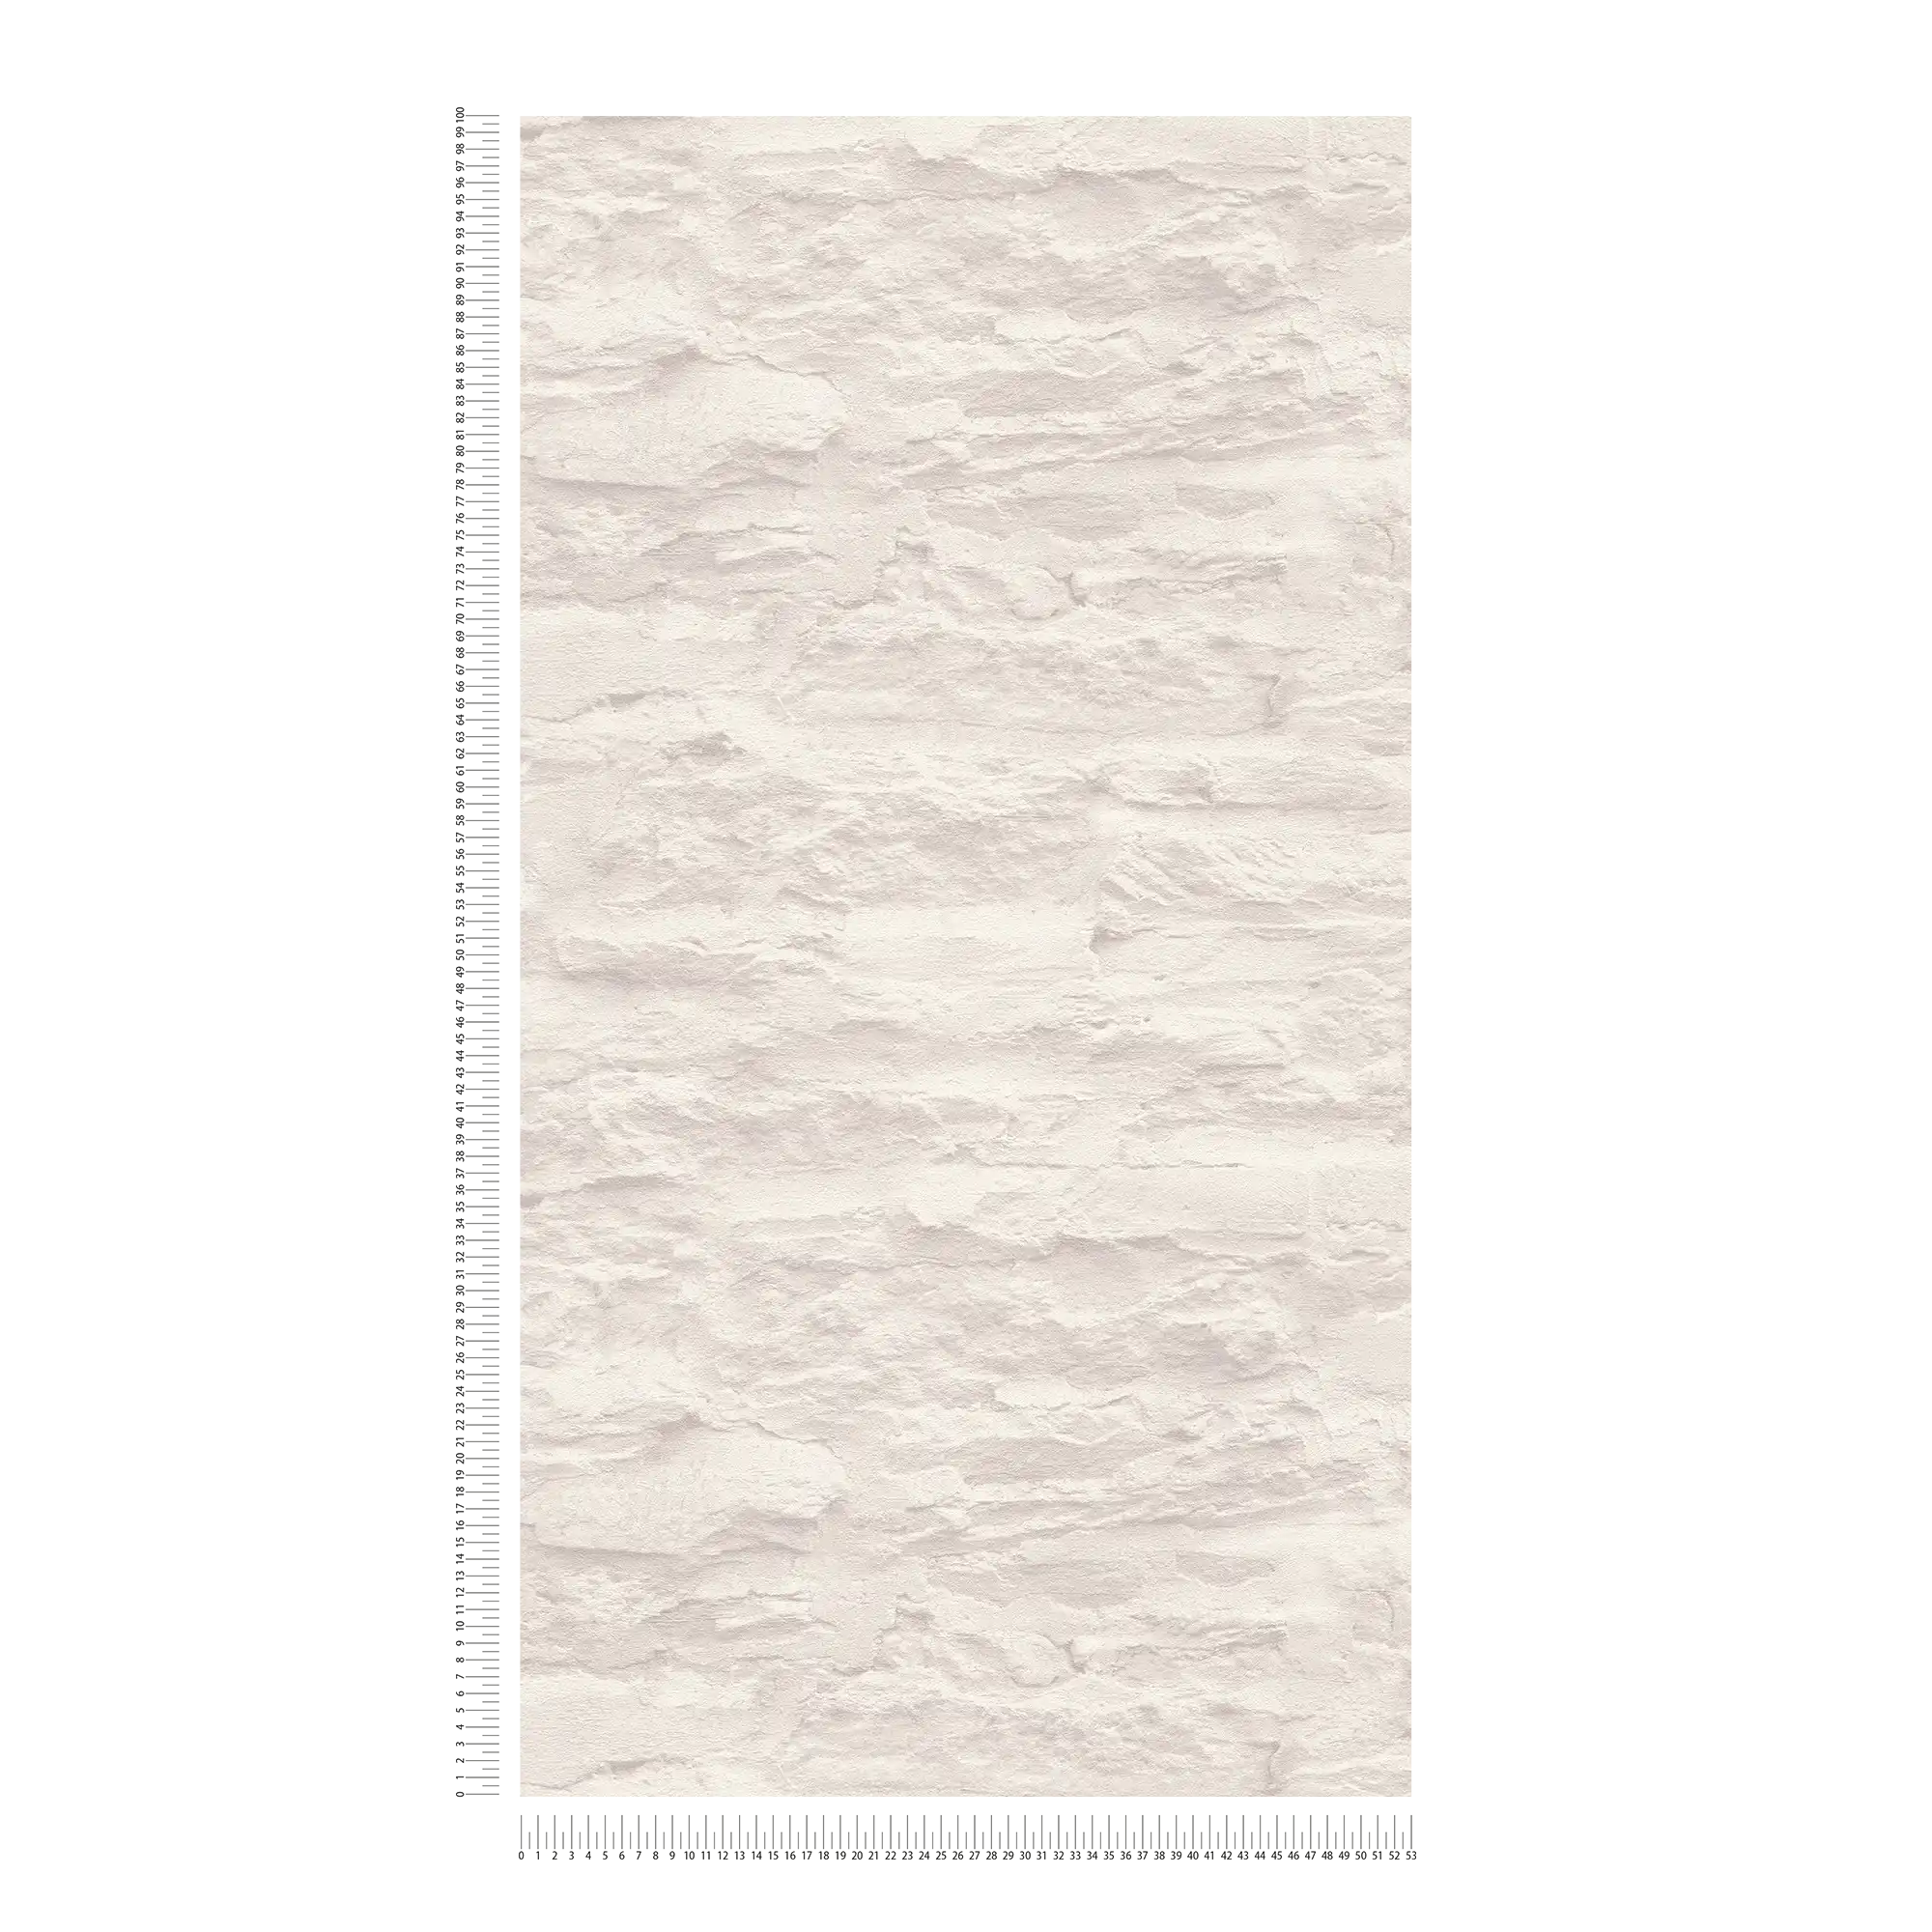             Papel pintado ligero en óptica de pared con piedras naturales y yeso - crema, blanco
        